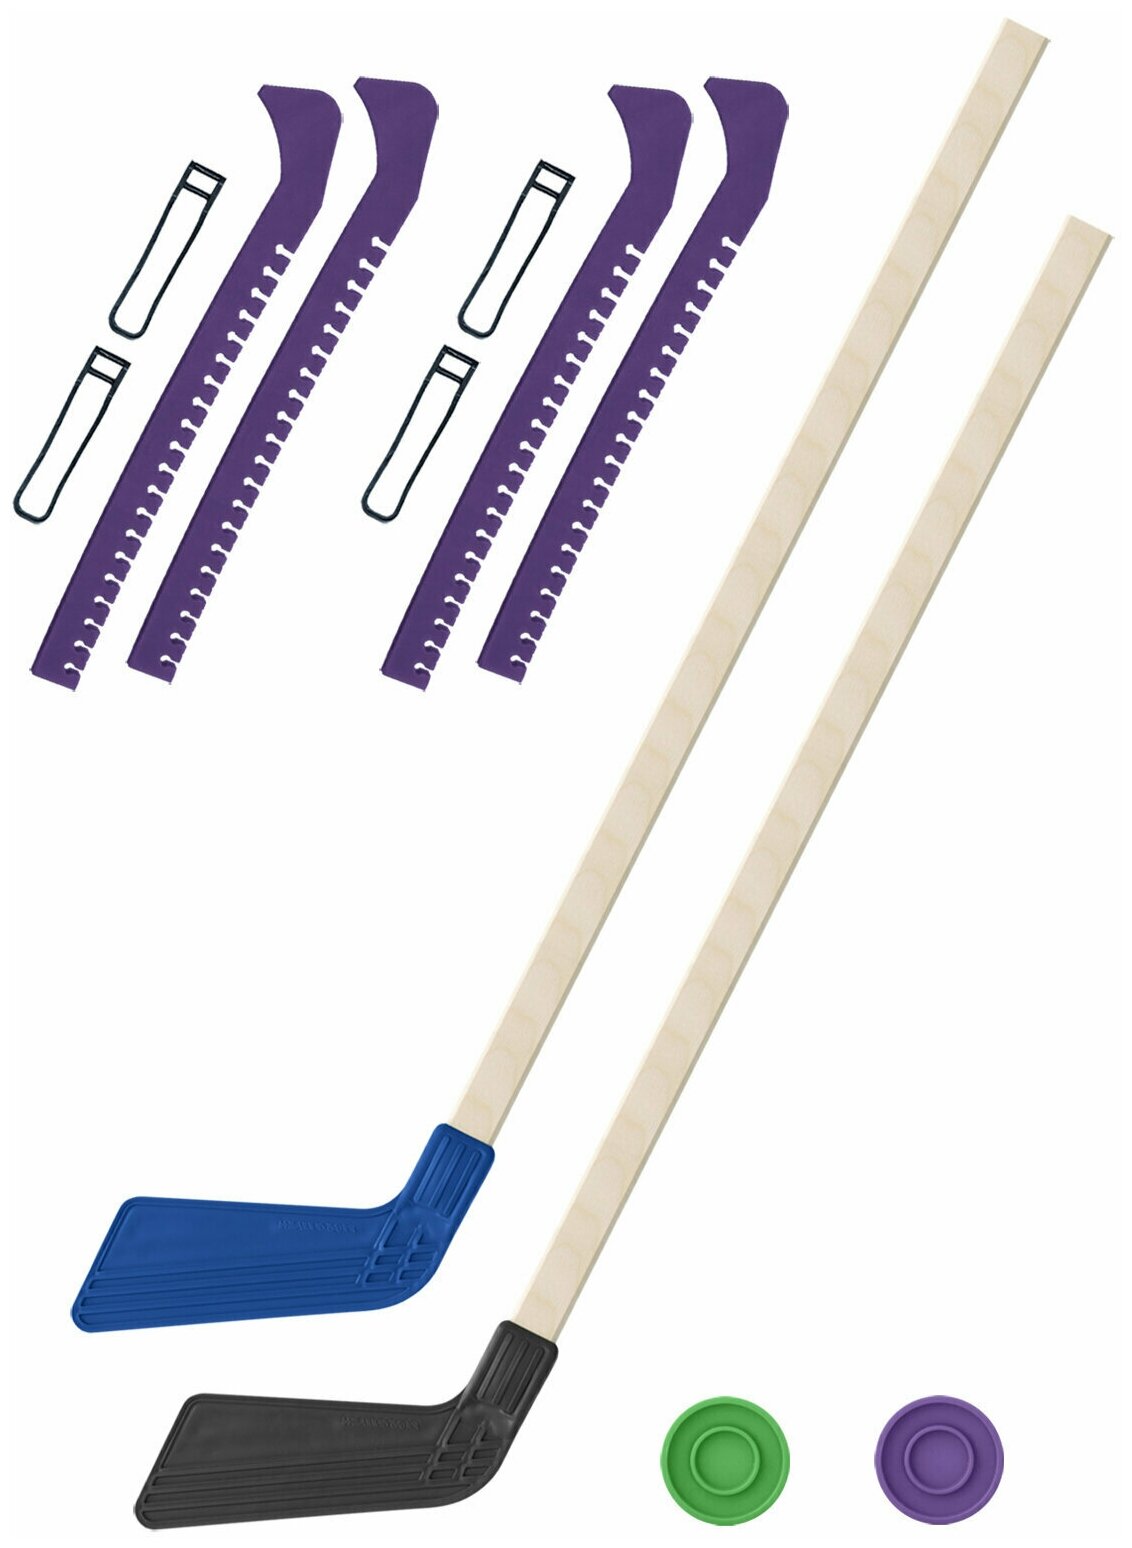 Детский хоккейный набор для игр на улице Клюшка хоккейная детская 2 шт синяя и чёрная 80 см.+2 шайбы + Чехлы для коньков фиолетовые - 2 шт. Винтер